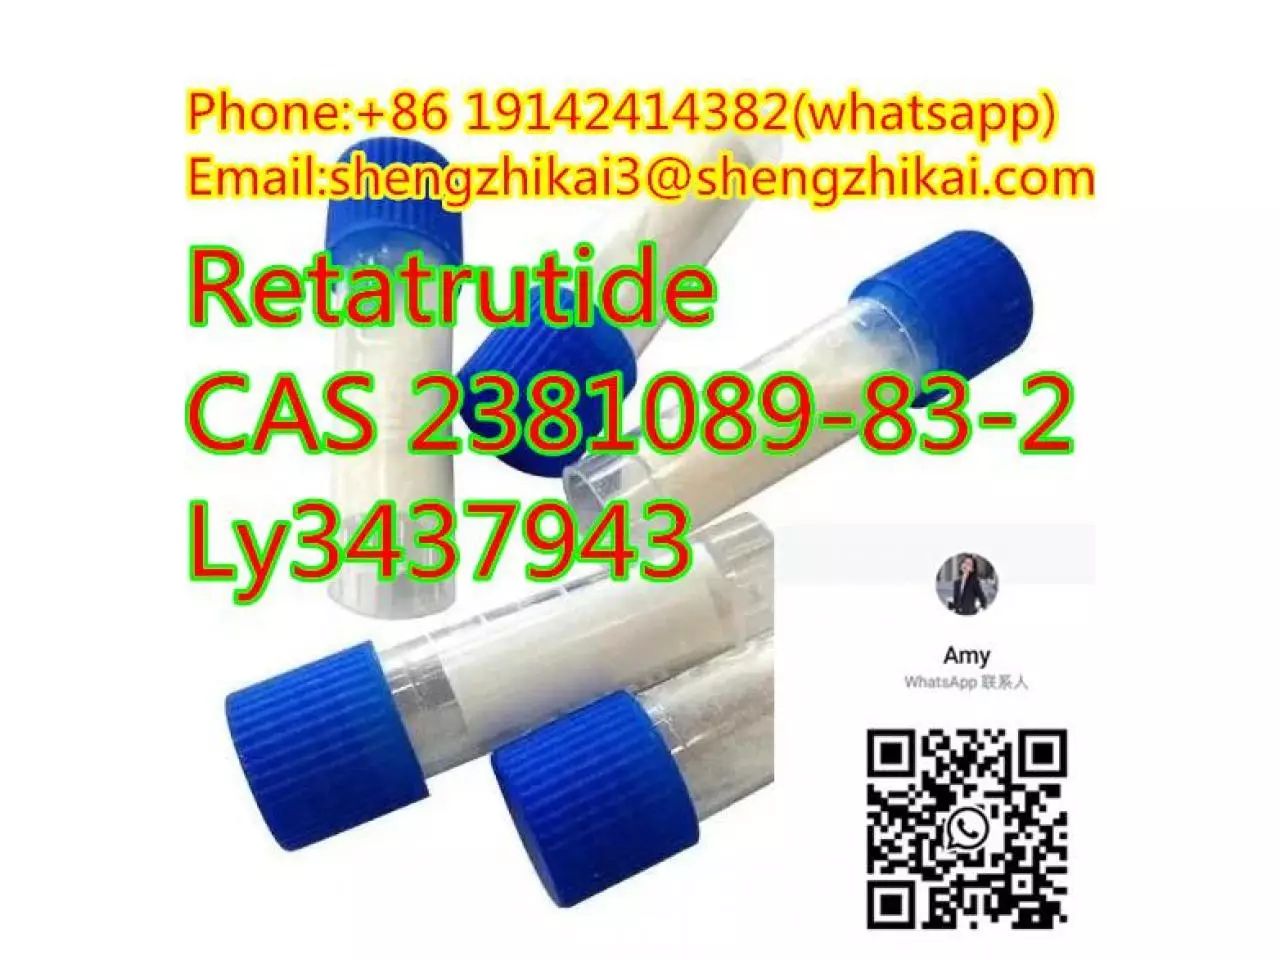 الشركة المصنعة توريد الببتيدات ريتاتروتيد CAS 2381089-83-2 Ly3437943 ريتاتروتيد - 1/10